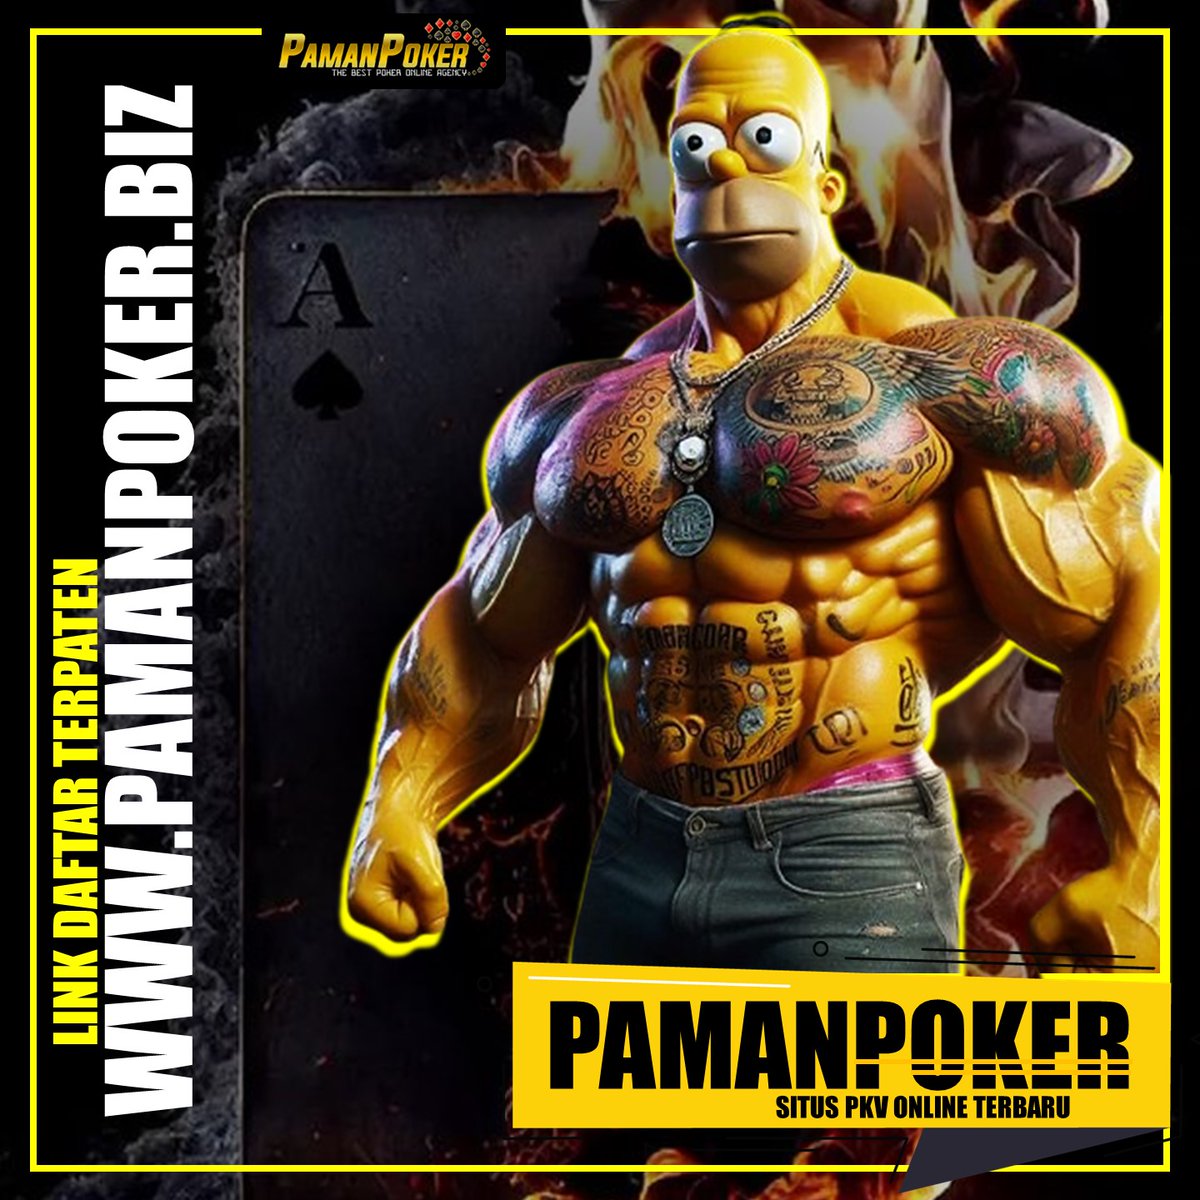 PAMANPOKER ONLINE
.
#pamanpoker #pokerpkv #pkvslot